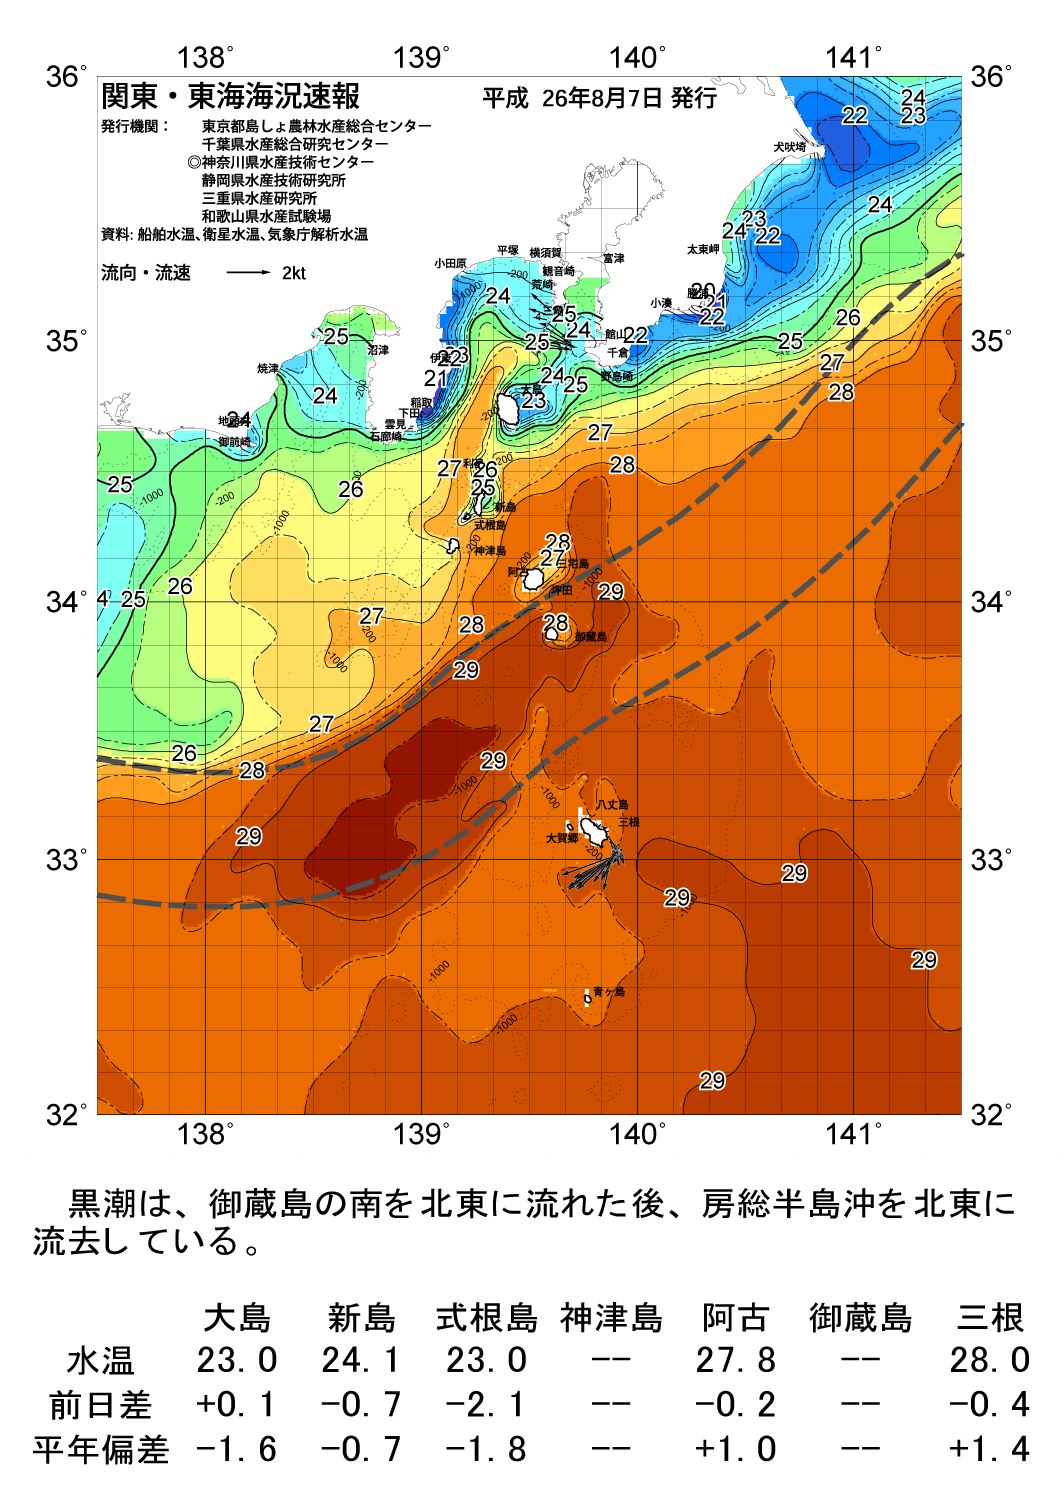 海の天気図14年8月7日 東京都島しょ農林水産総合センター